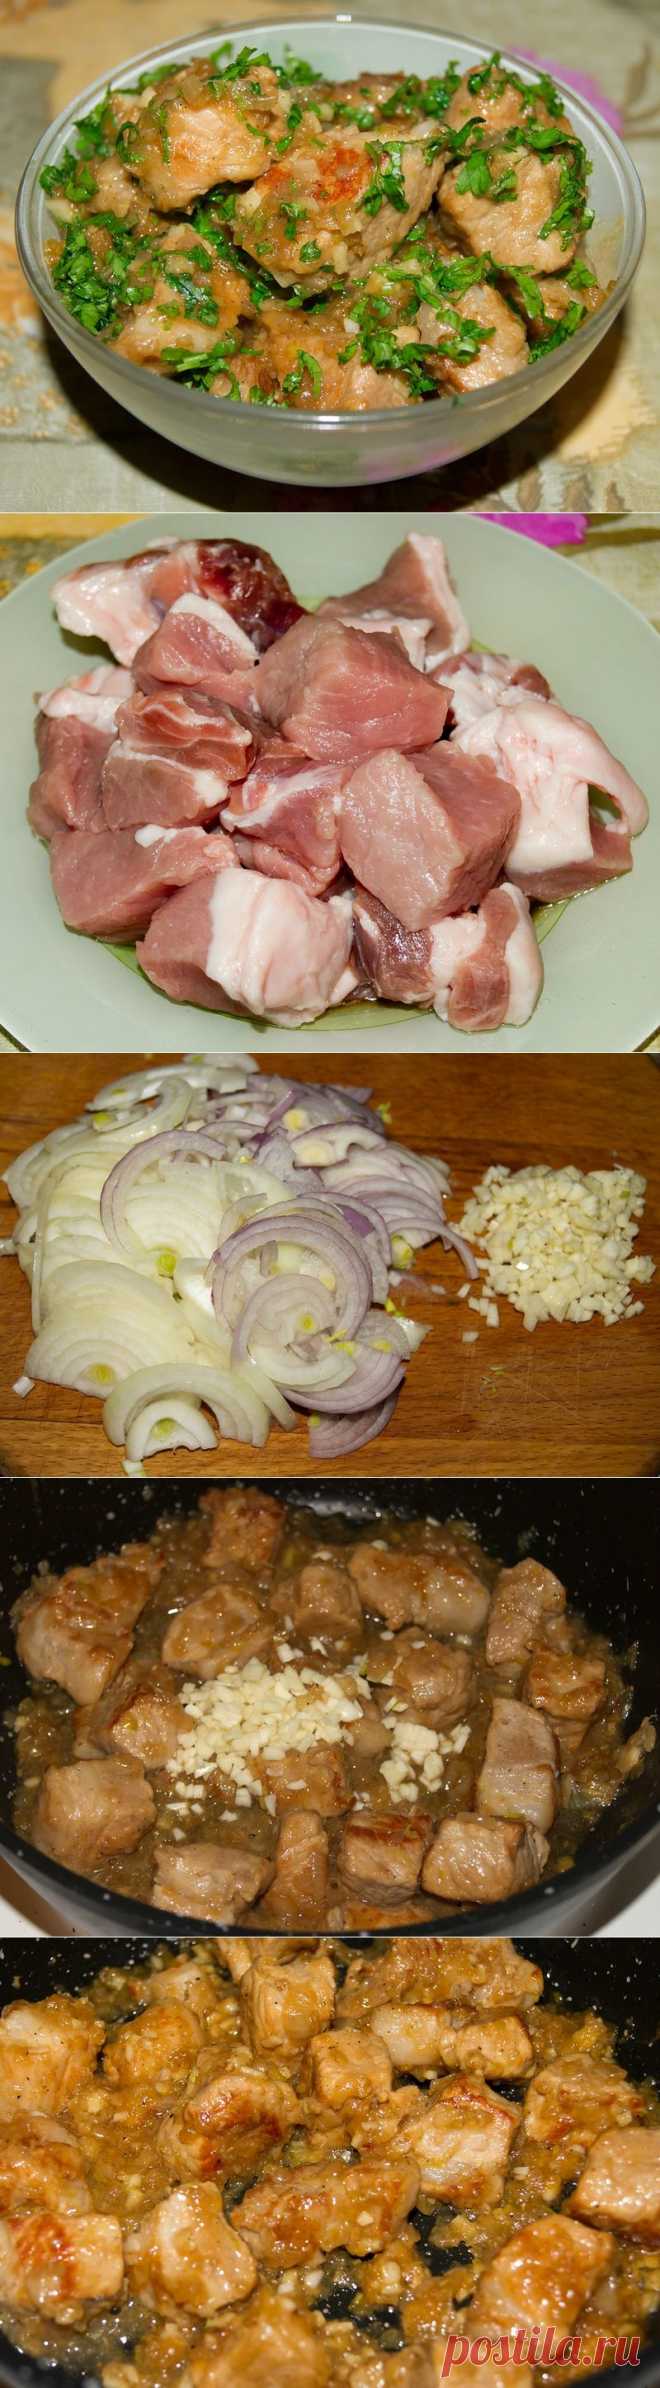 Проверенные рецепты: Токаница из свинины